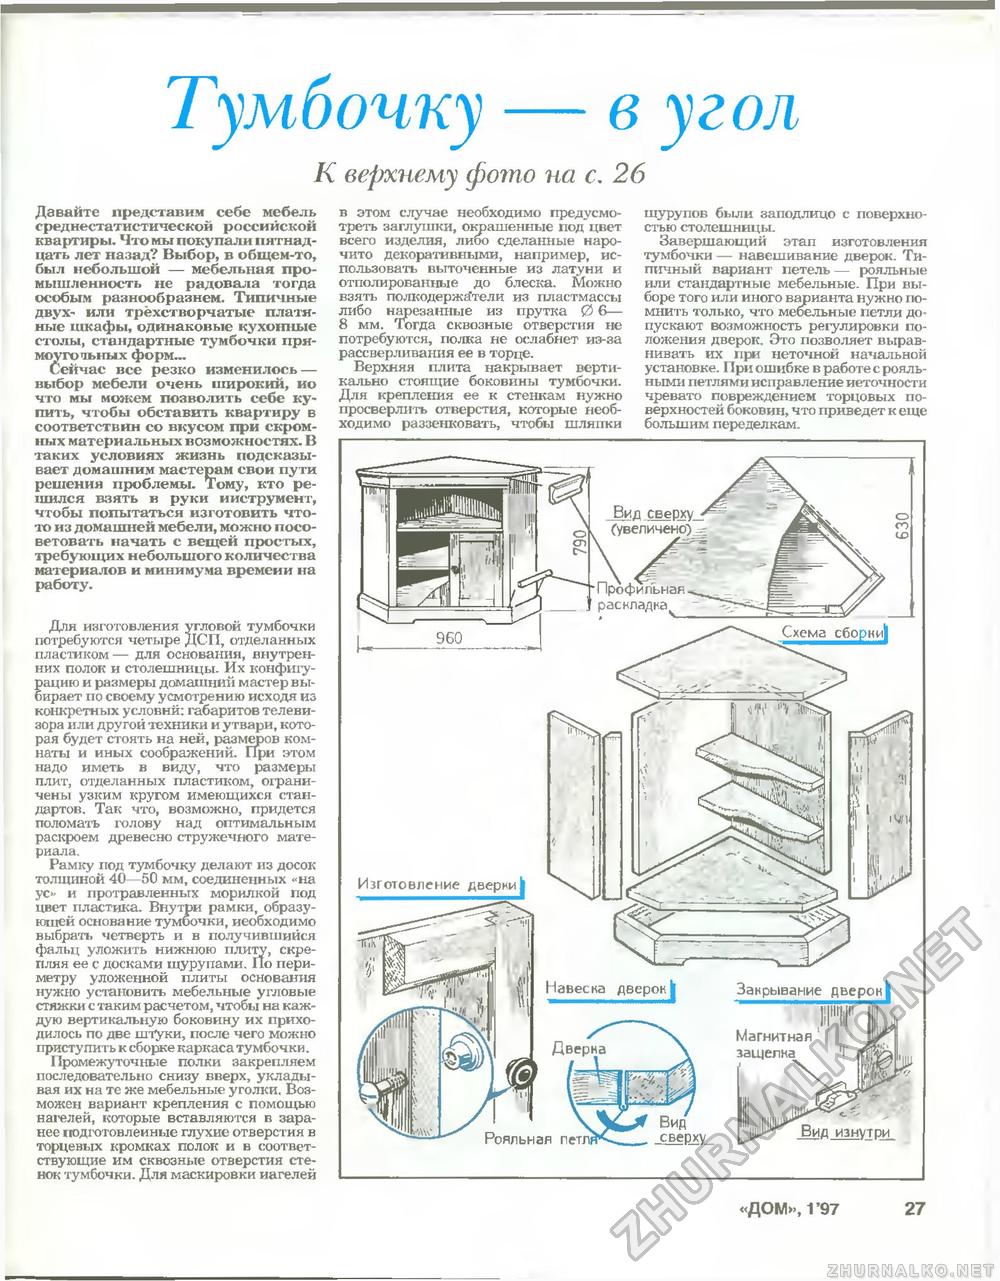 Дом 1997-01, страница 27